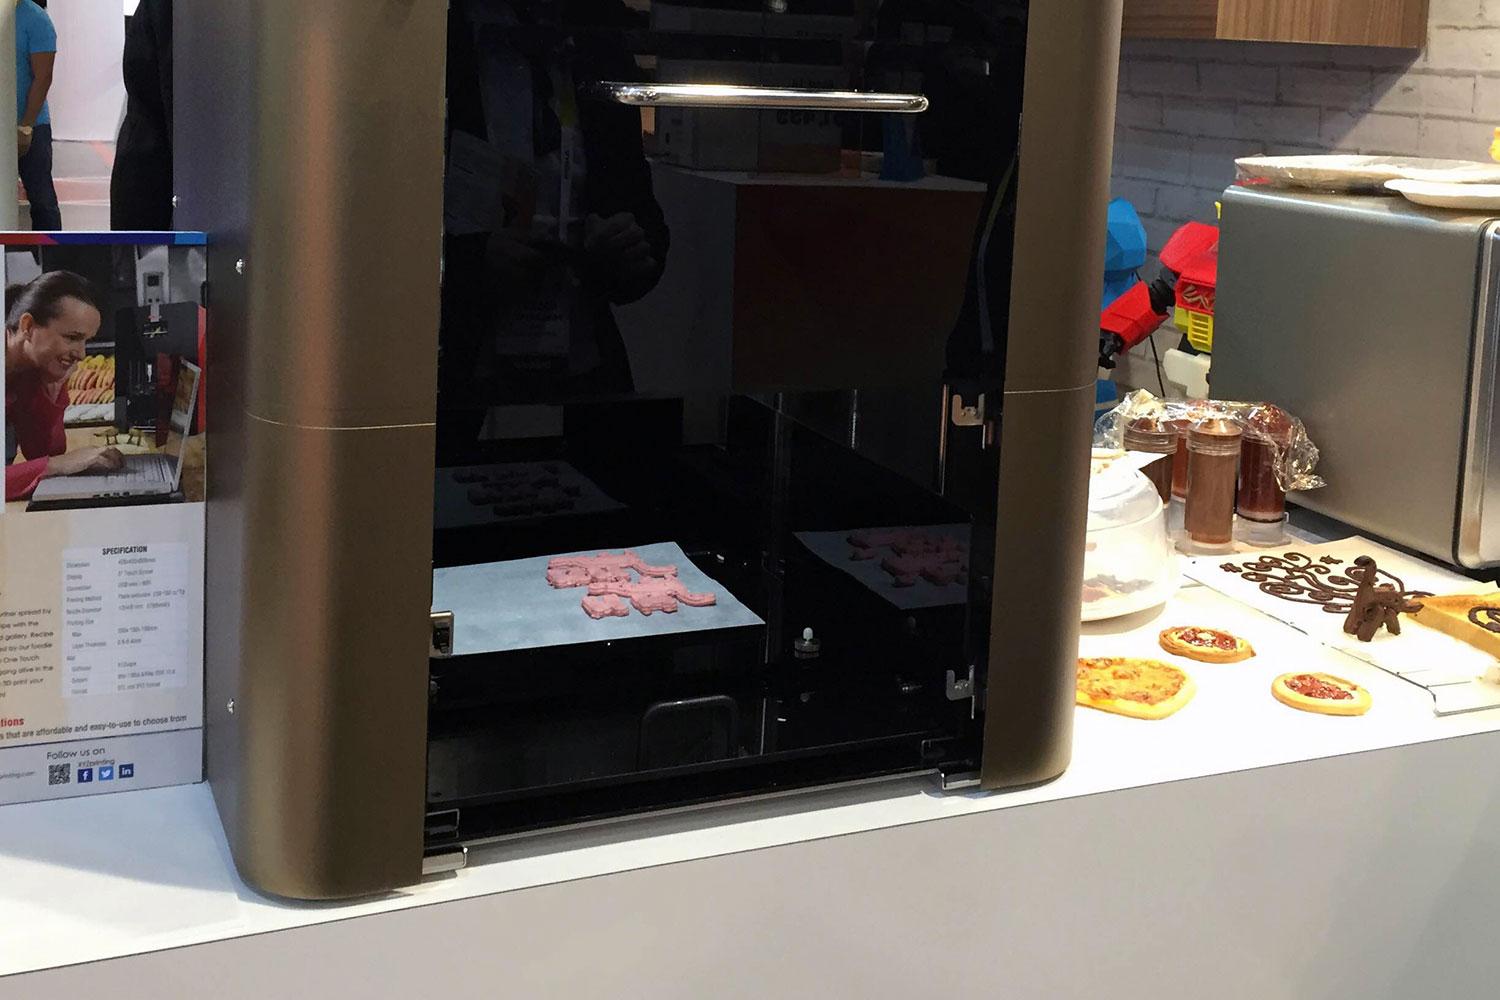 xyzprinting debuts 3d food printer at ces 2015 0099b